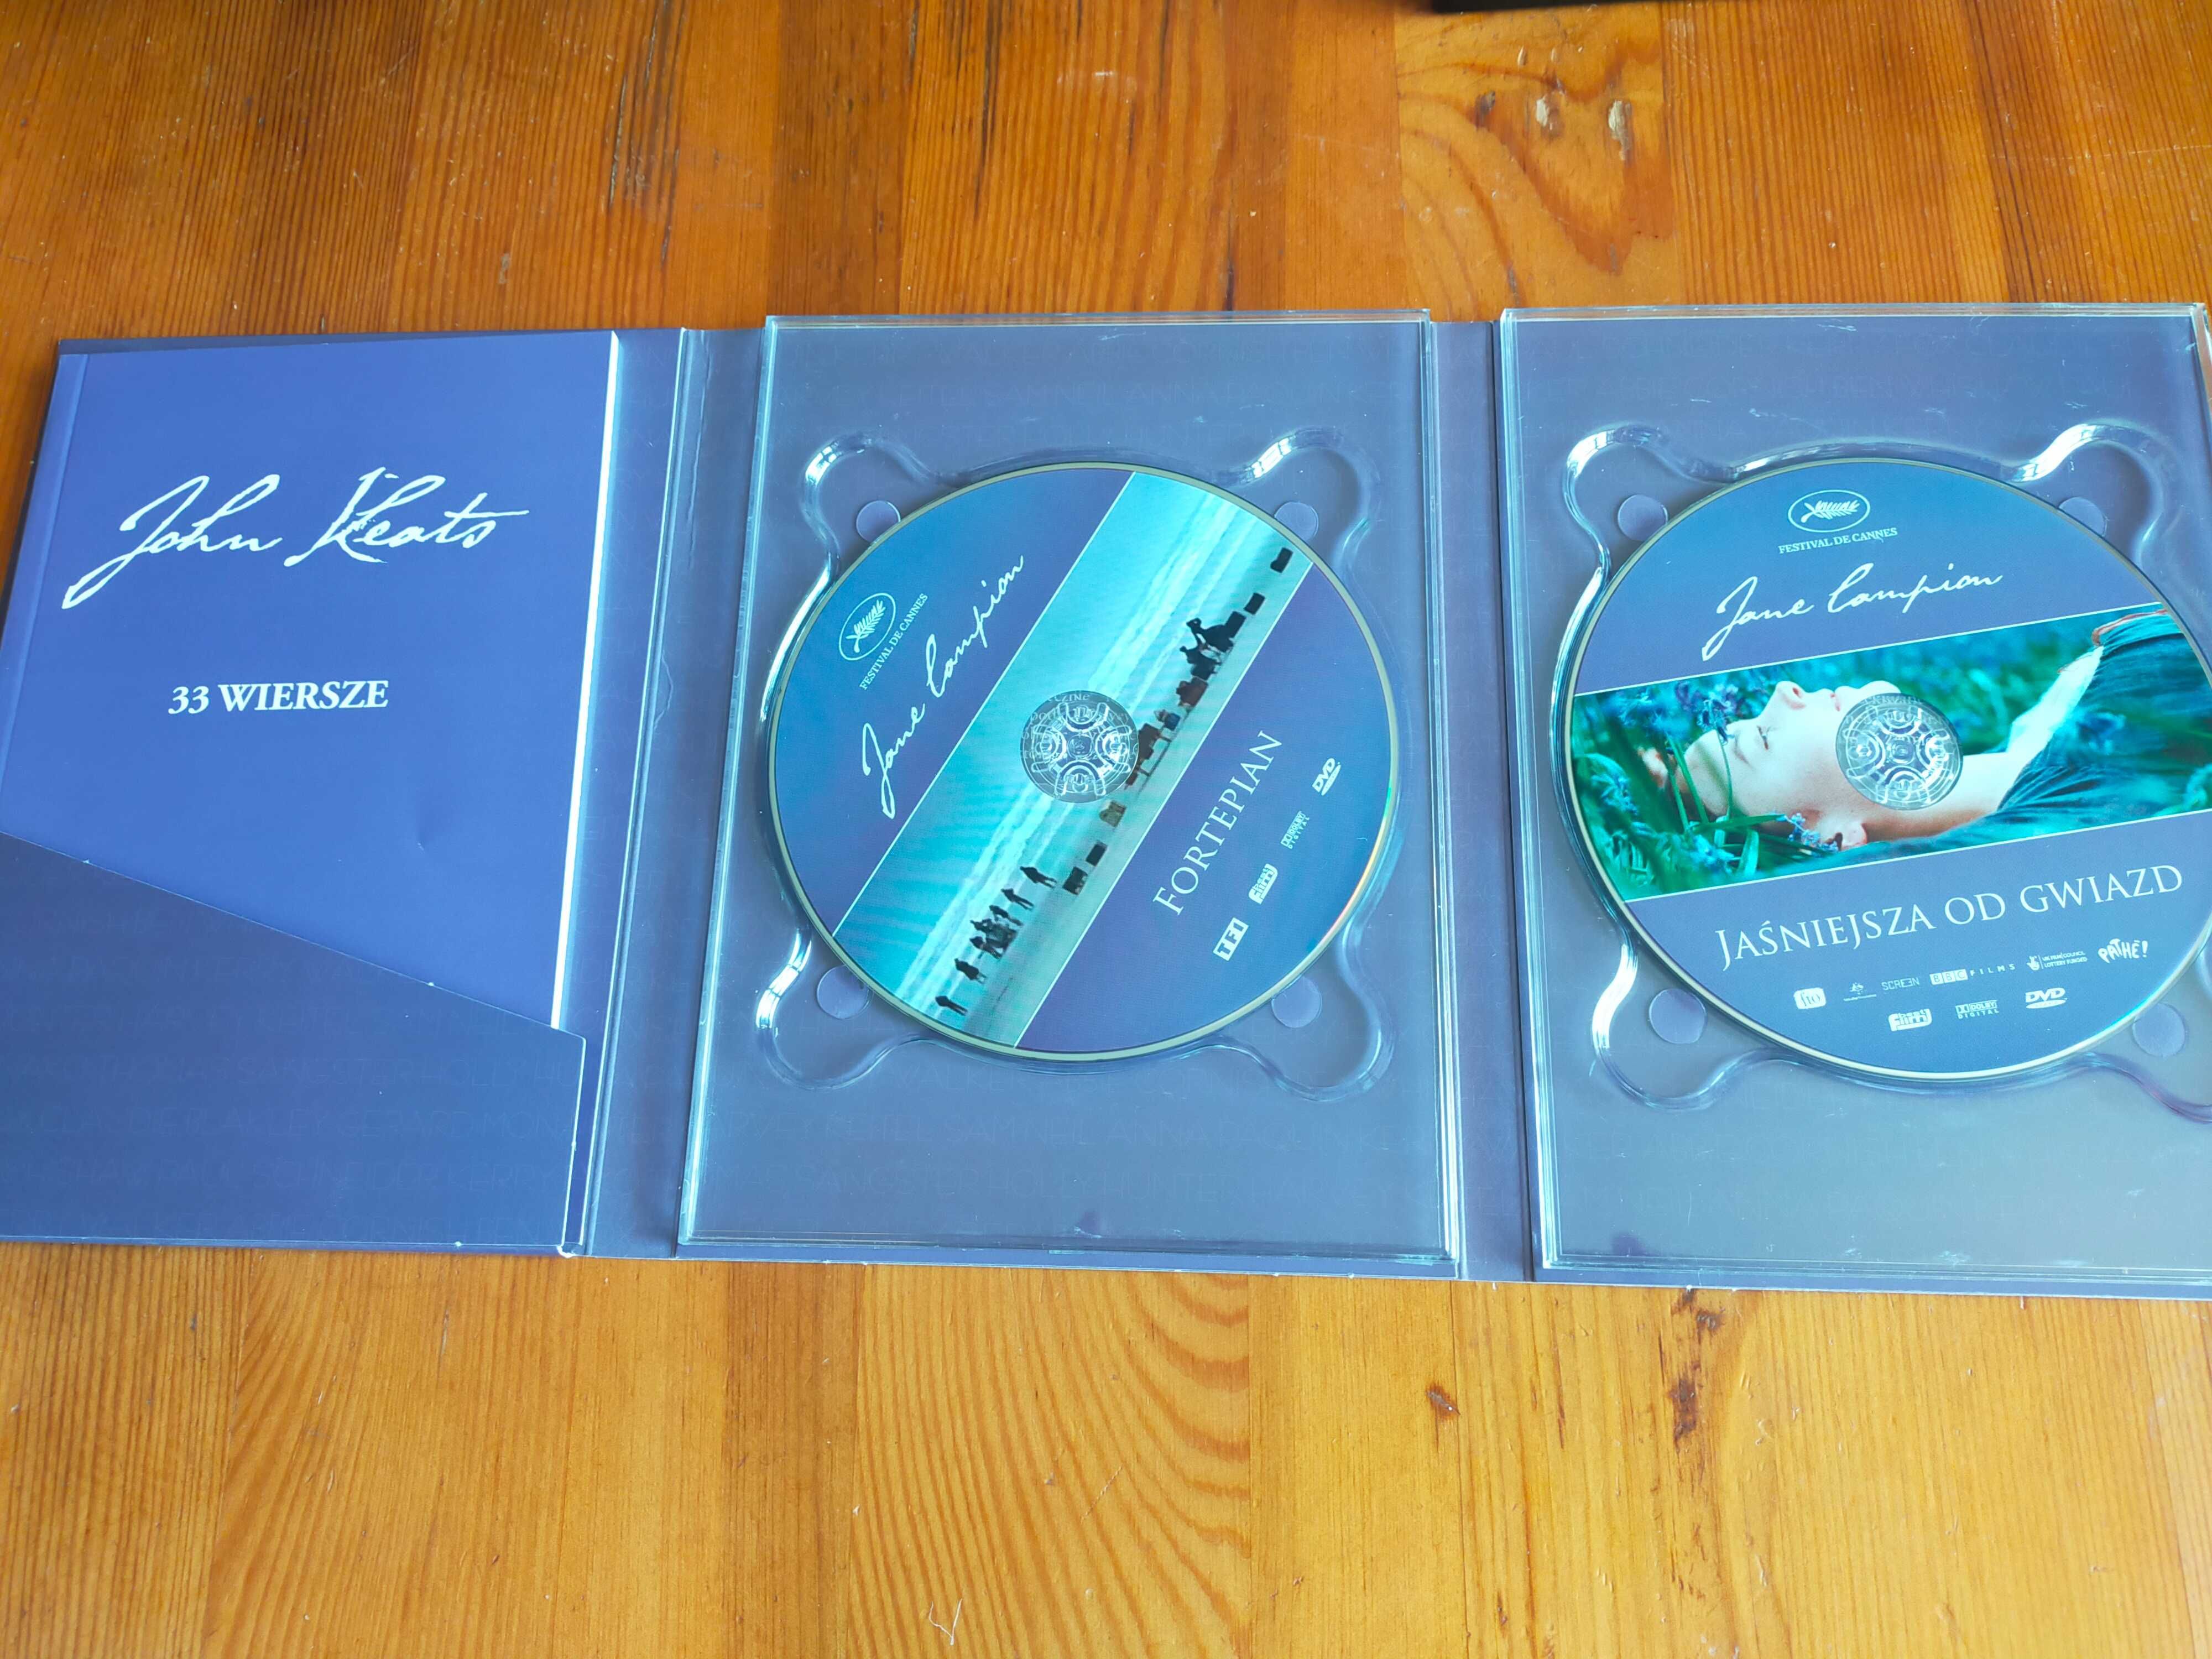 Jane Campion  unikatowa kolekcja DVD wraz z poezją Johna Keatsa